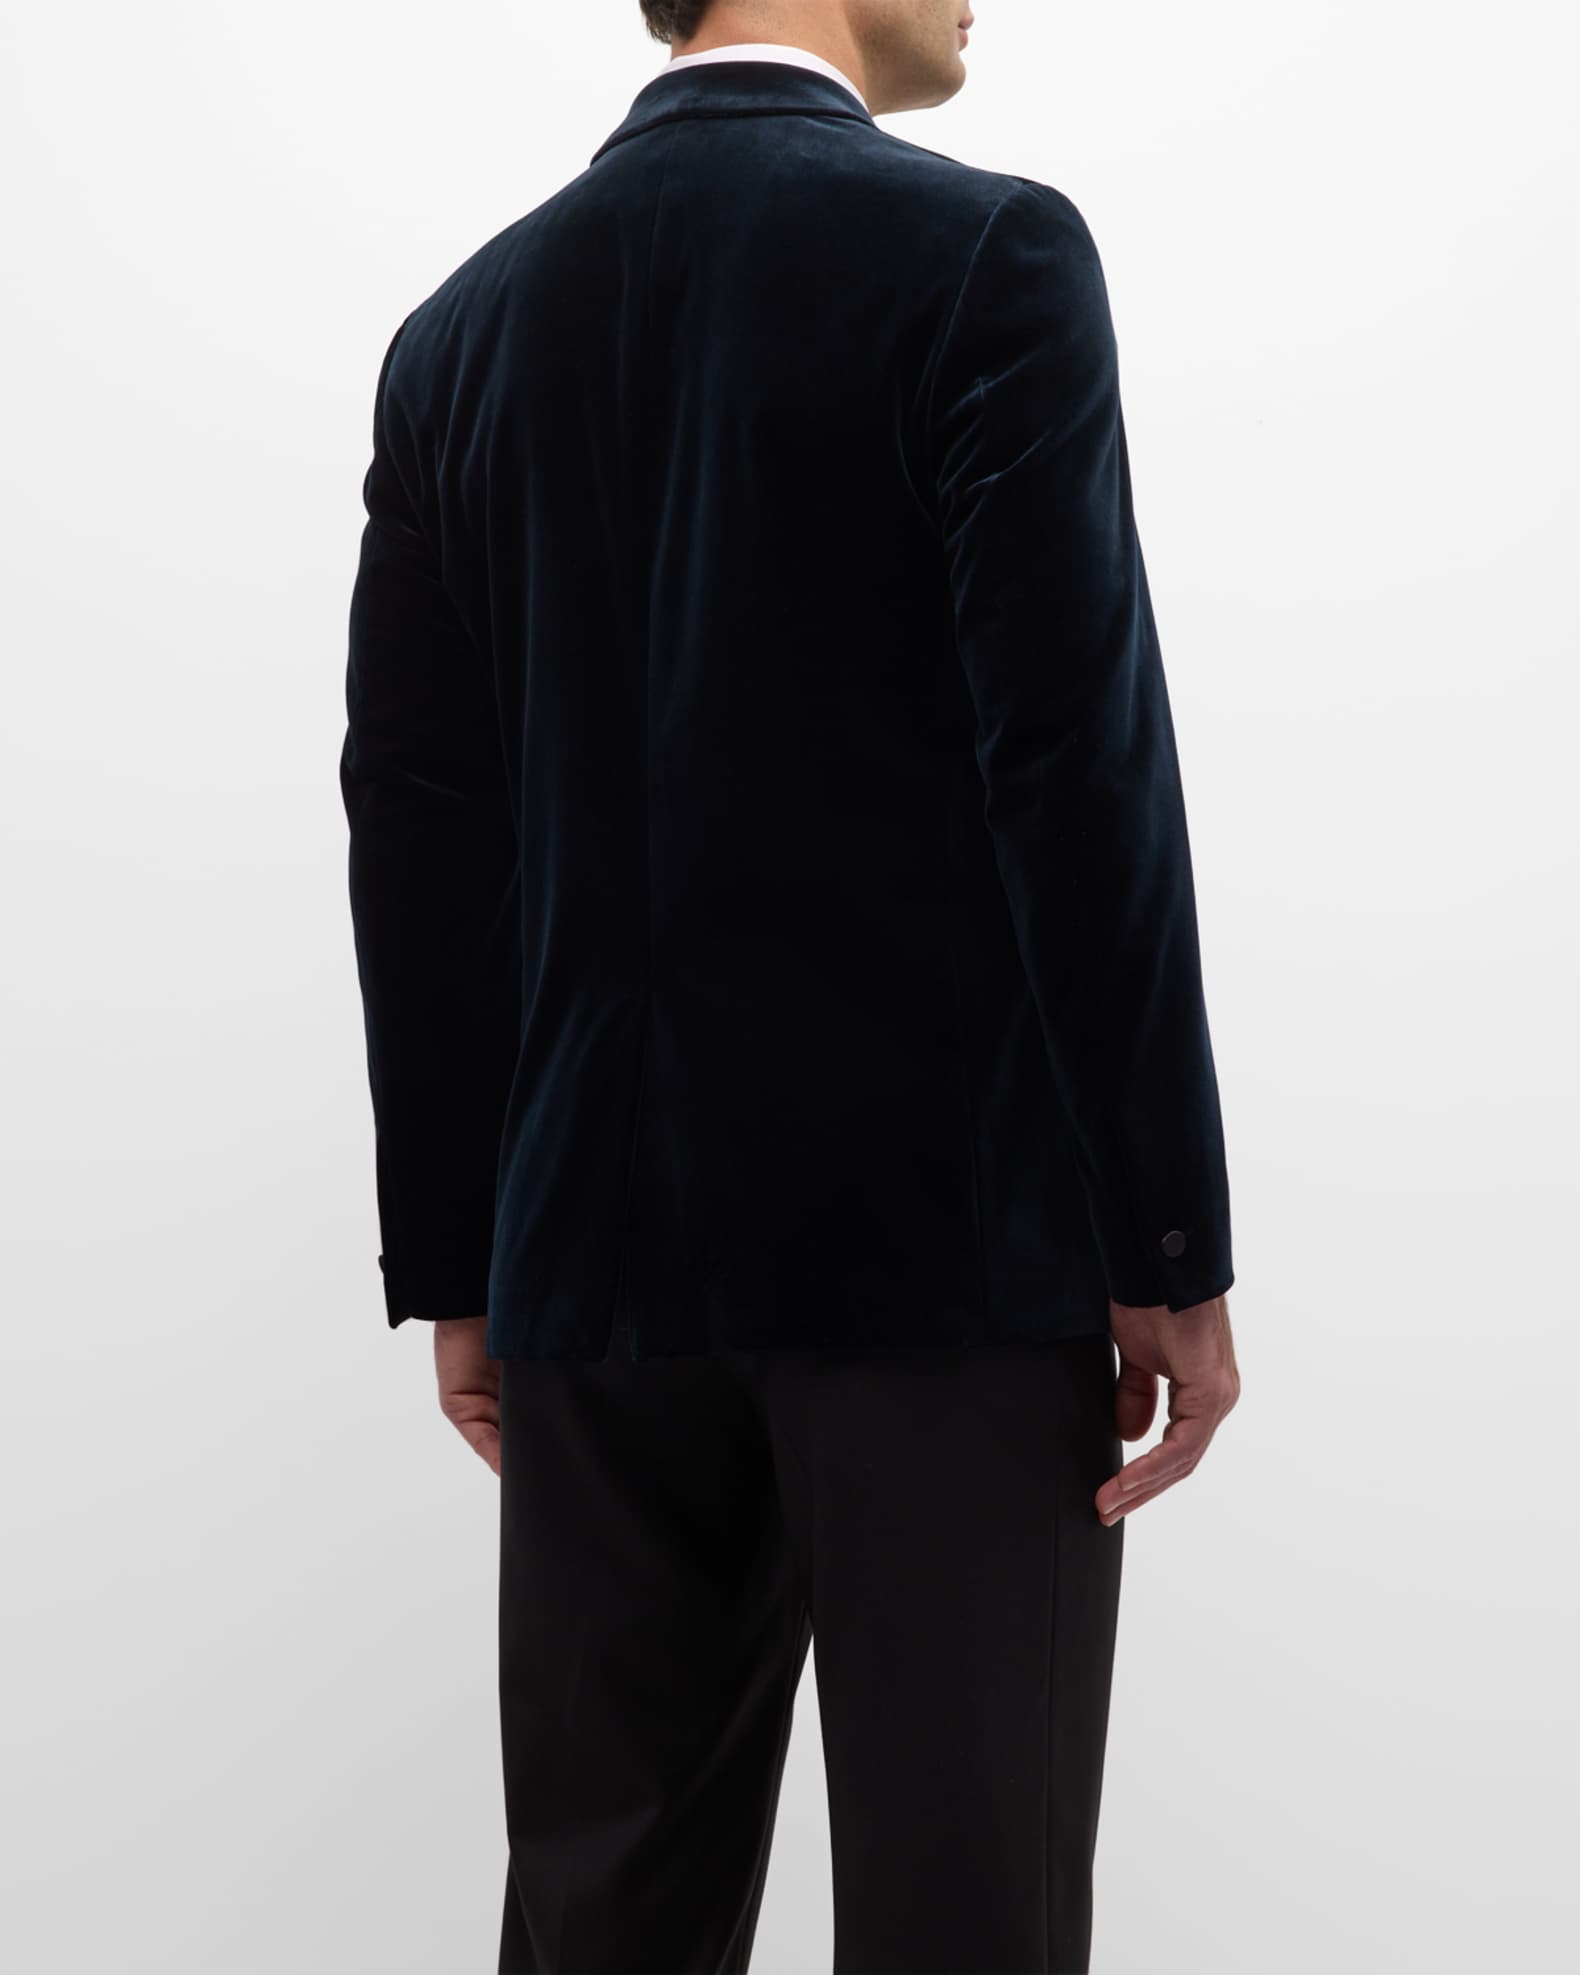 Theory Men's Chambers Tux in Plush Velvet | Neiman Marcus